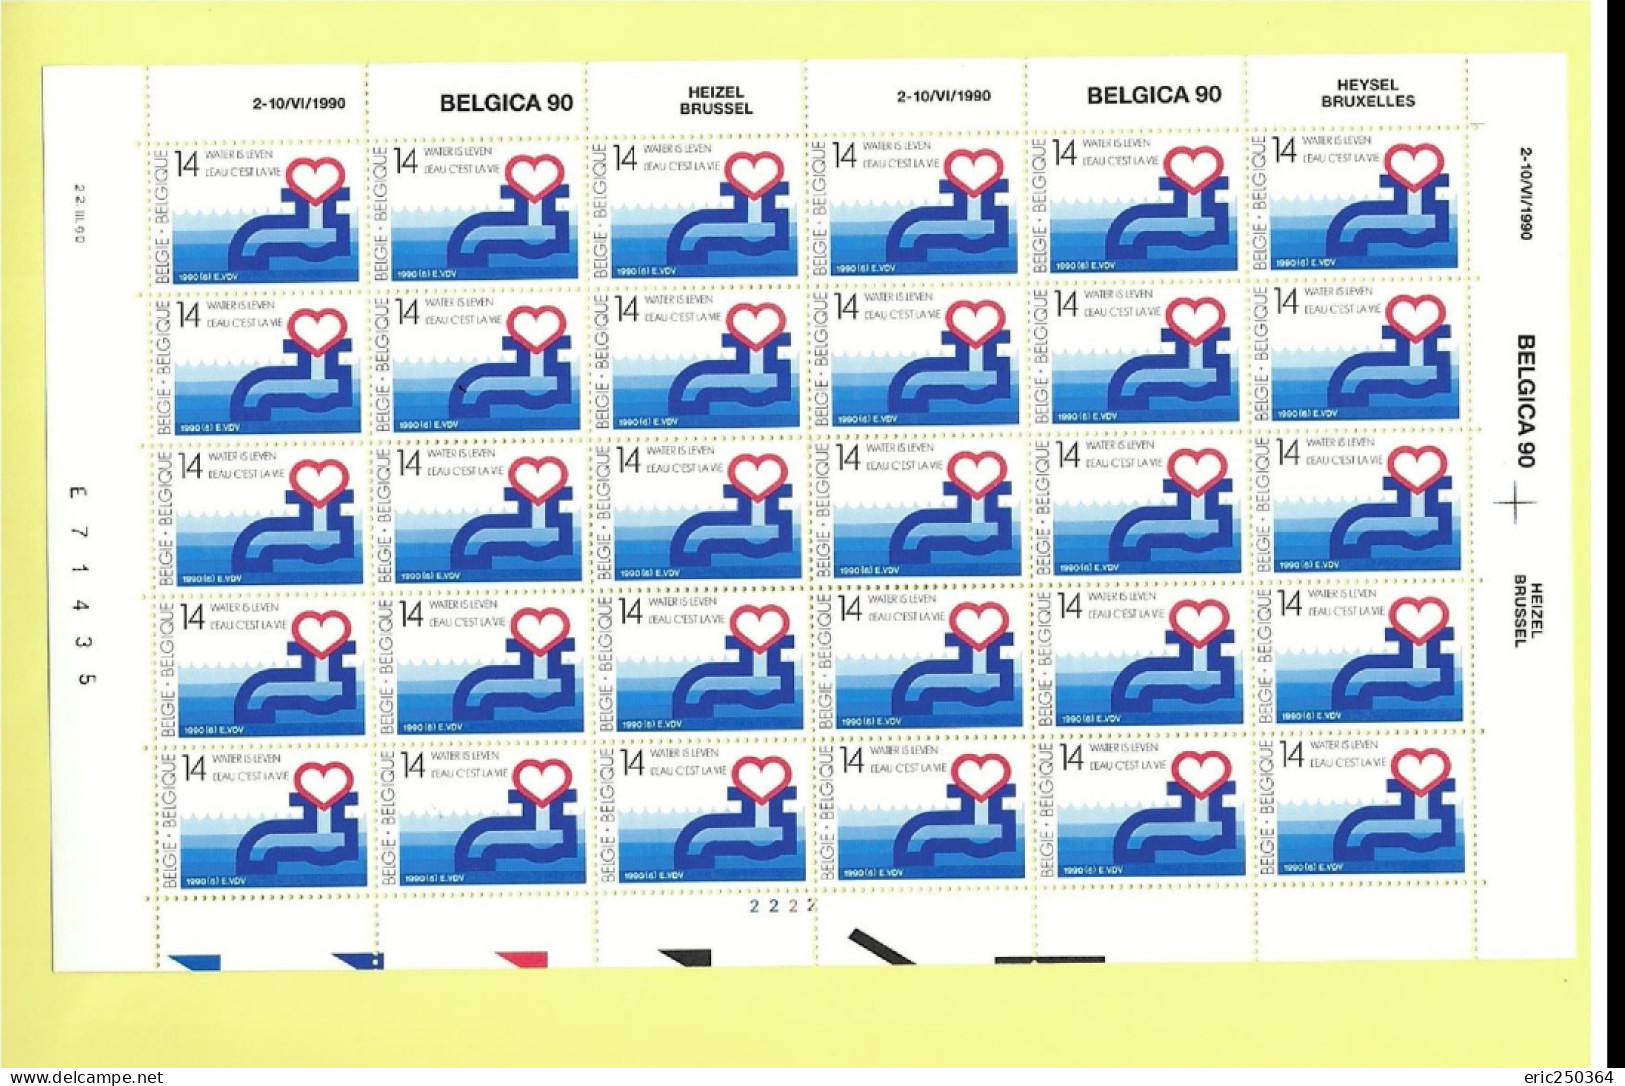 Superbe lot de 25 feuilles de timbres entières / BELGICA et ROYAUTE